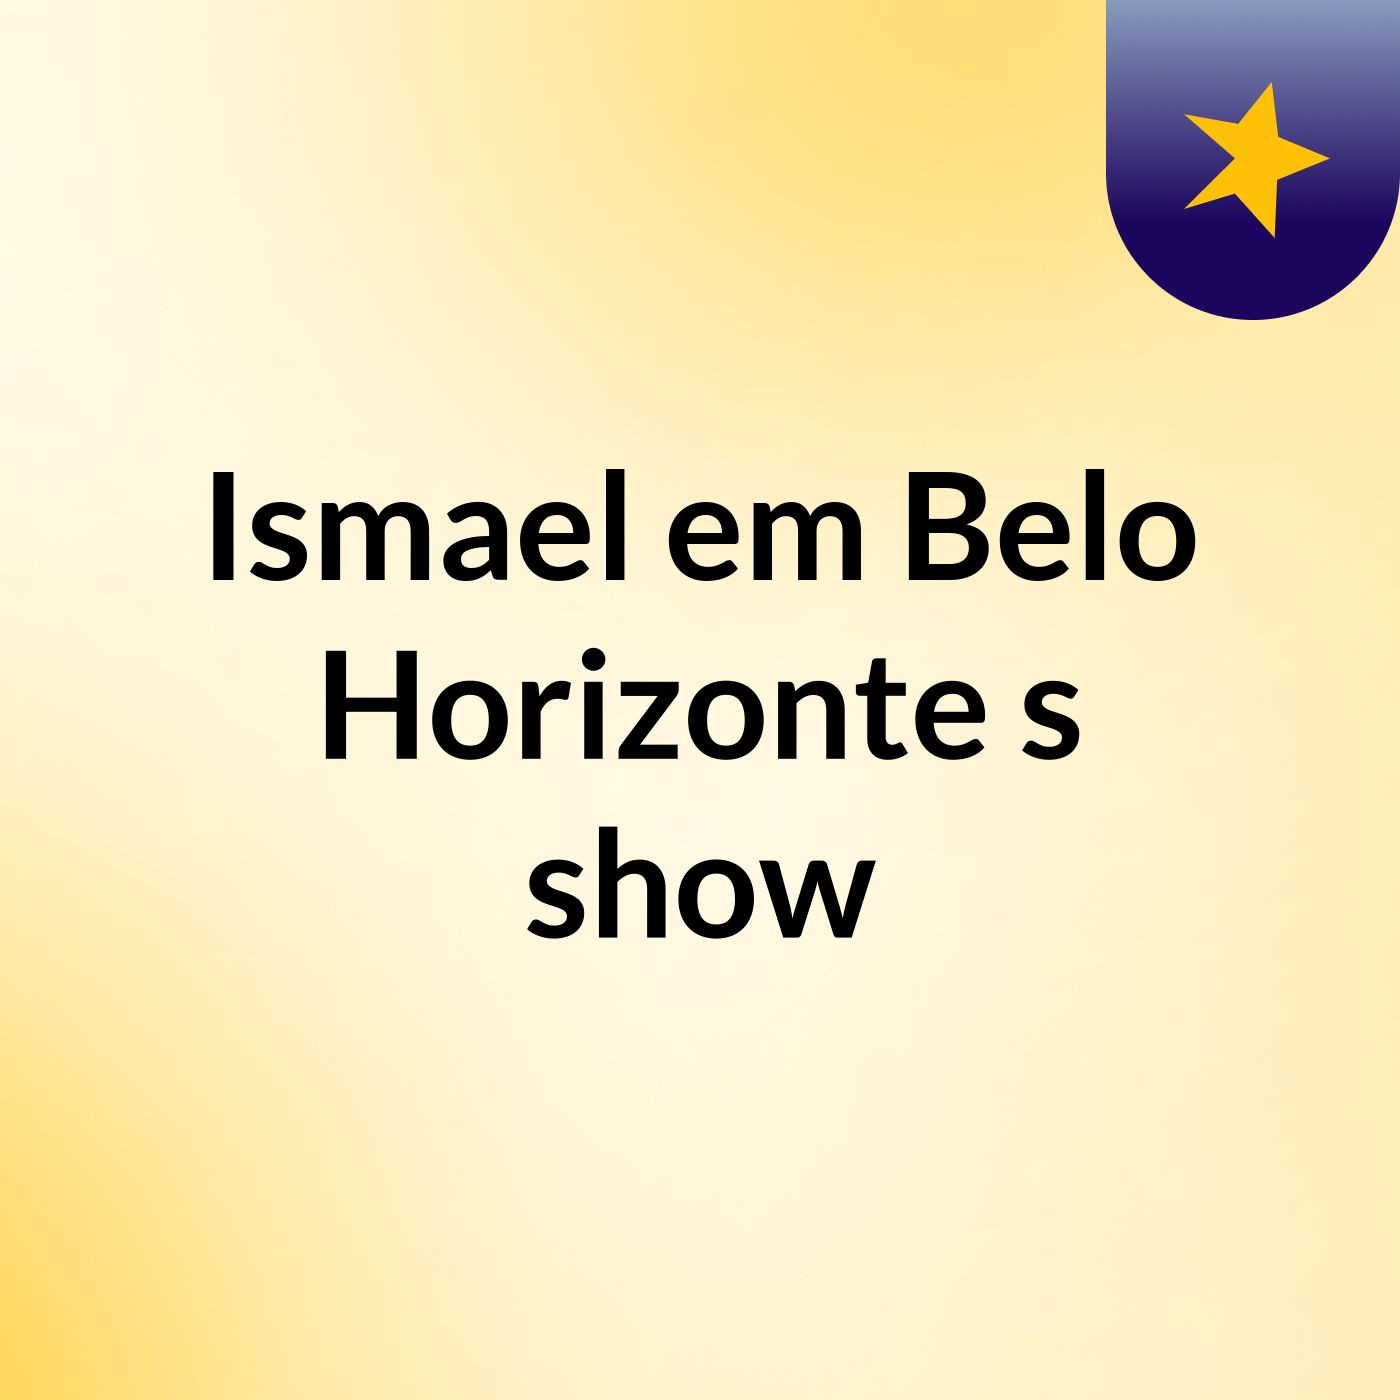 Ismael em Belo Horizonte's show